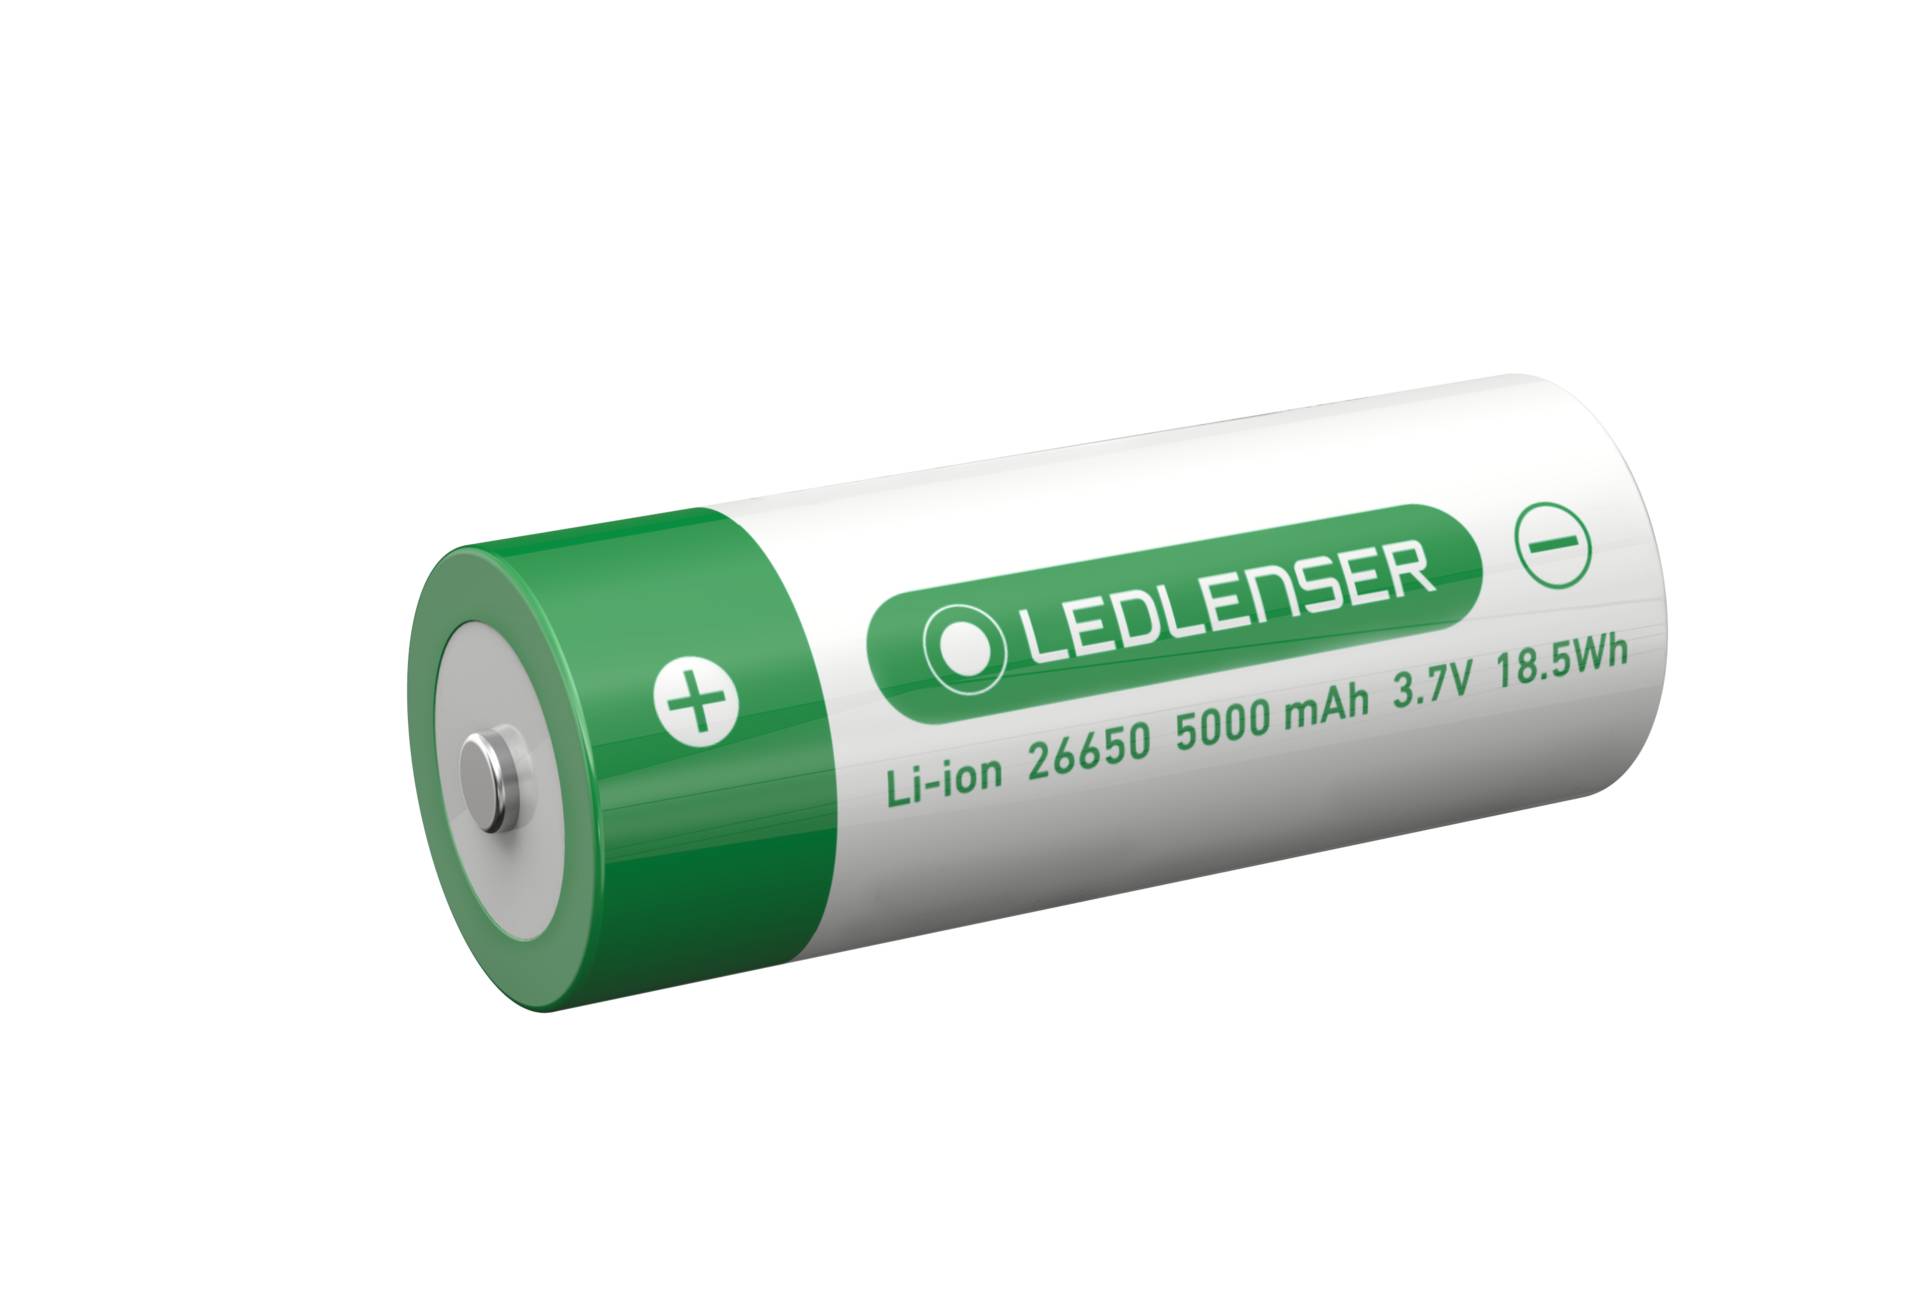 Ledlenser 26650 Li-Ion rechargeable Battery 5000 mAh von Ledlenser GmbH & Co Kg